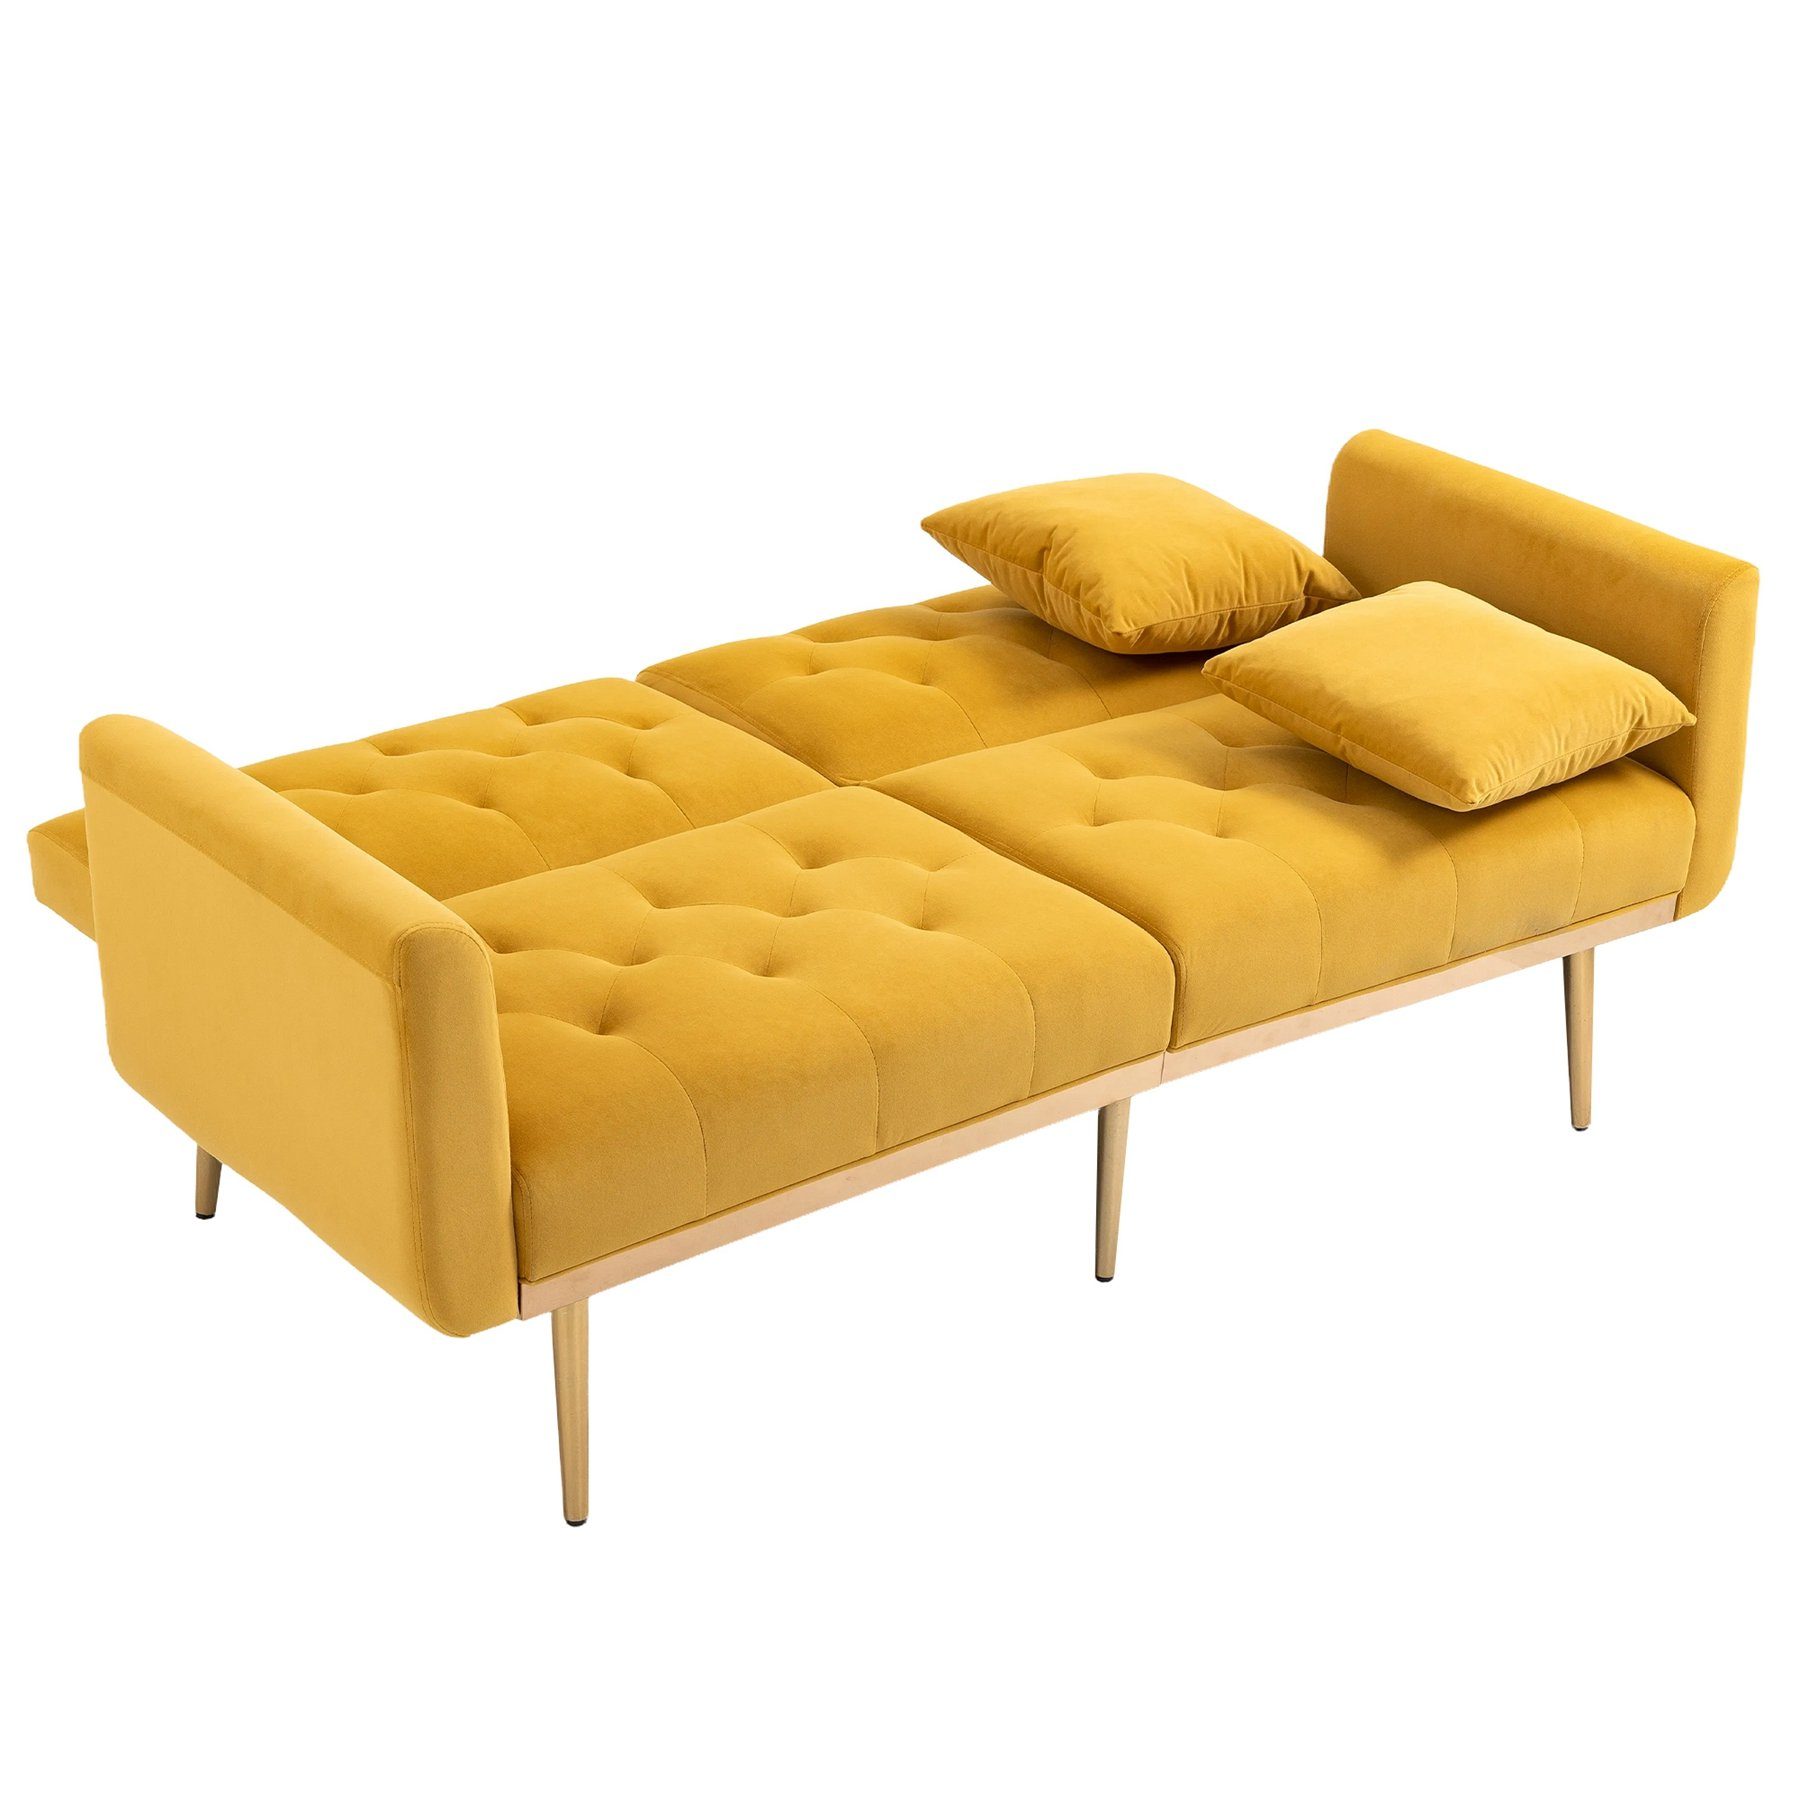 Celya bettfunktion,Cabrio gelb Sofa Bett zum Armlehne Sofa,mit 3-Sitzer